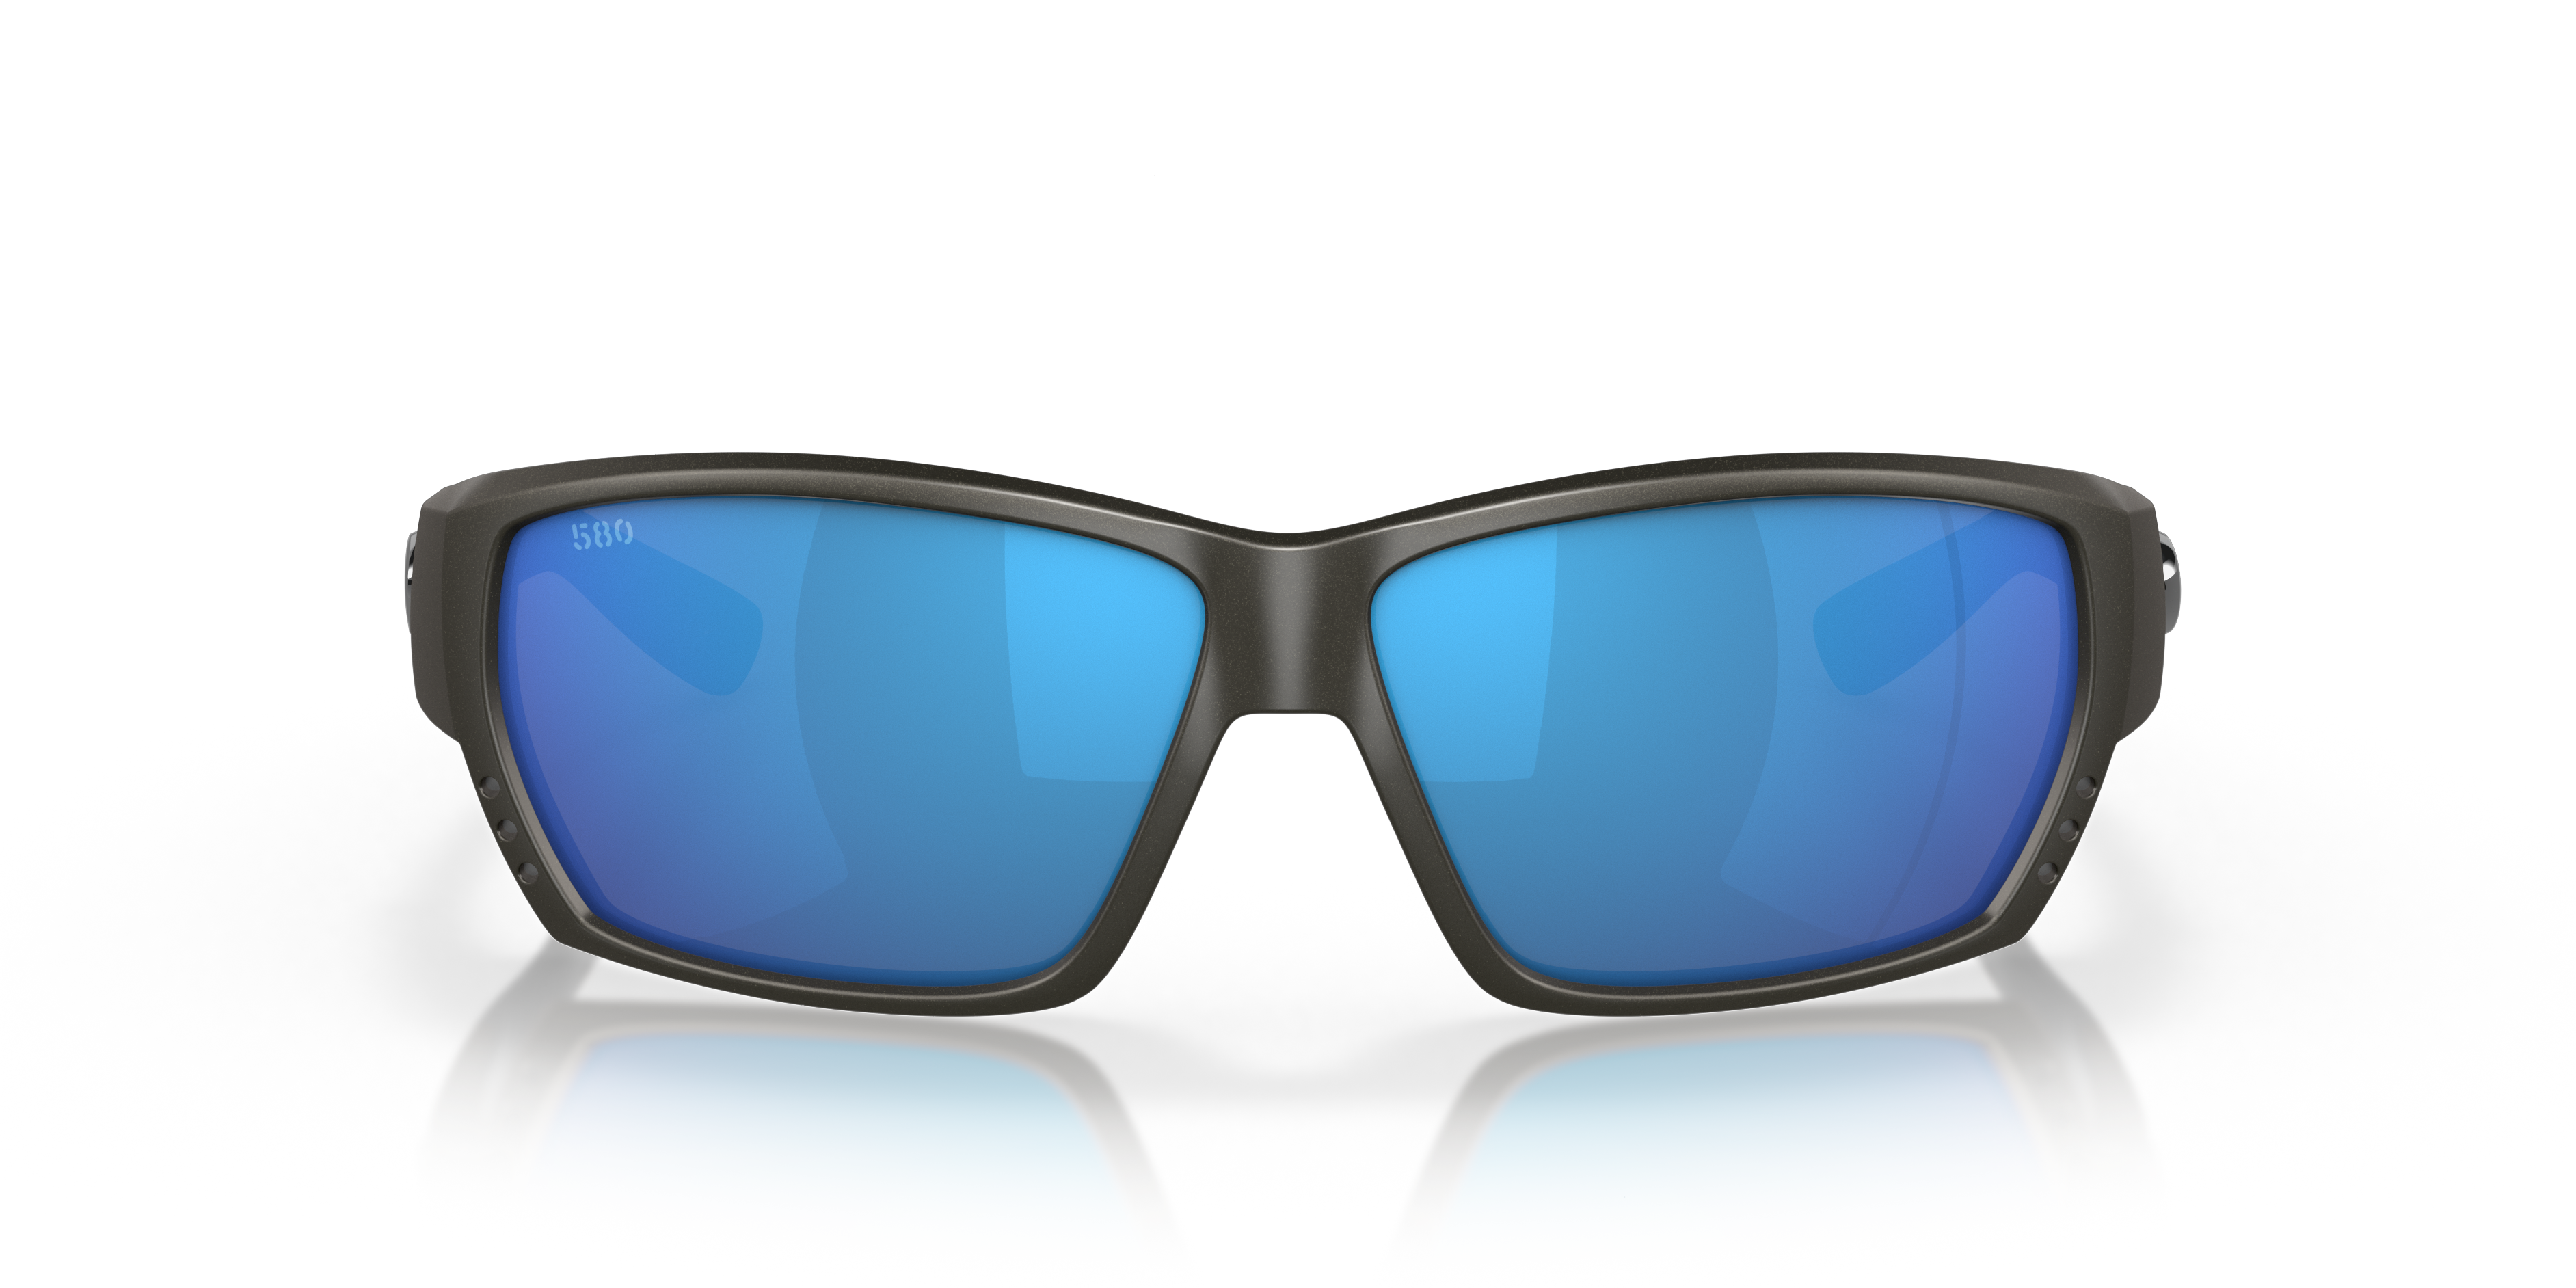 BOX 2019 New Tuna Alley 580P Polarized Sunglasses Driving Glasses UV400 